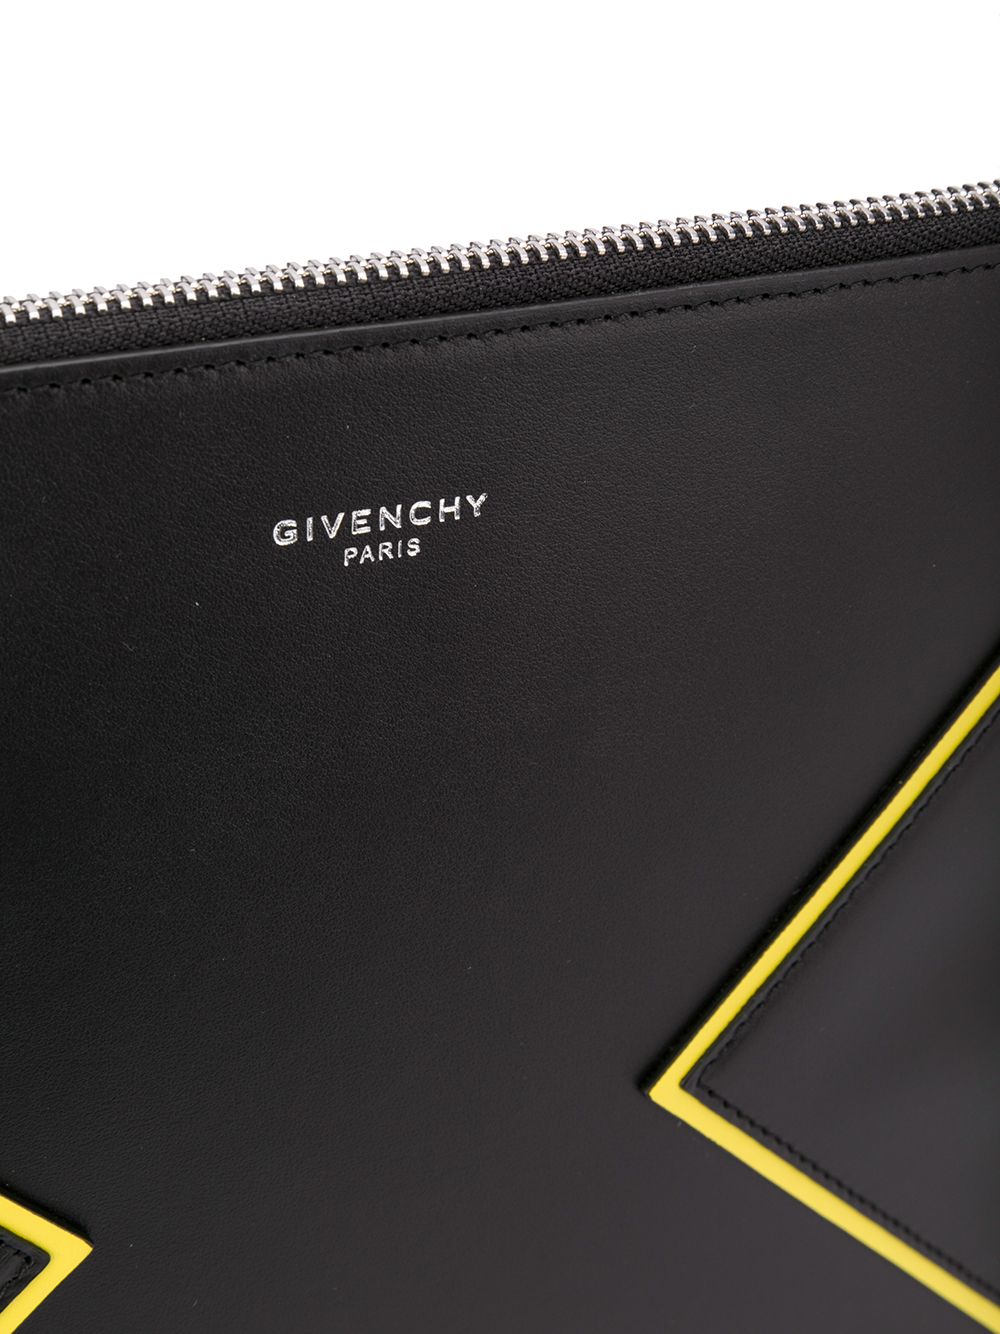 фото Givenchy клатч на молнии с контрастной окантовкой